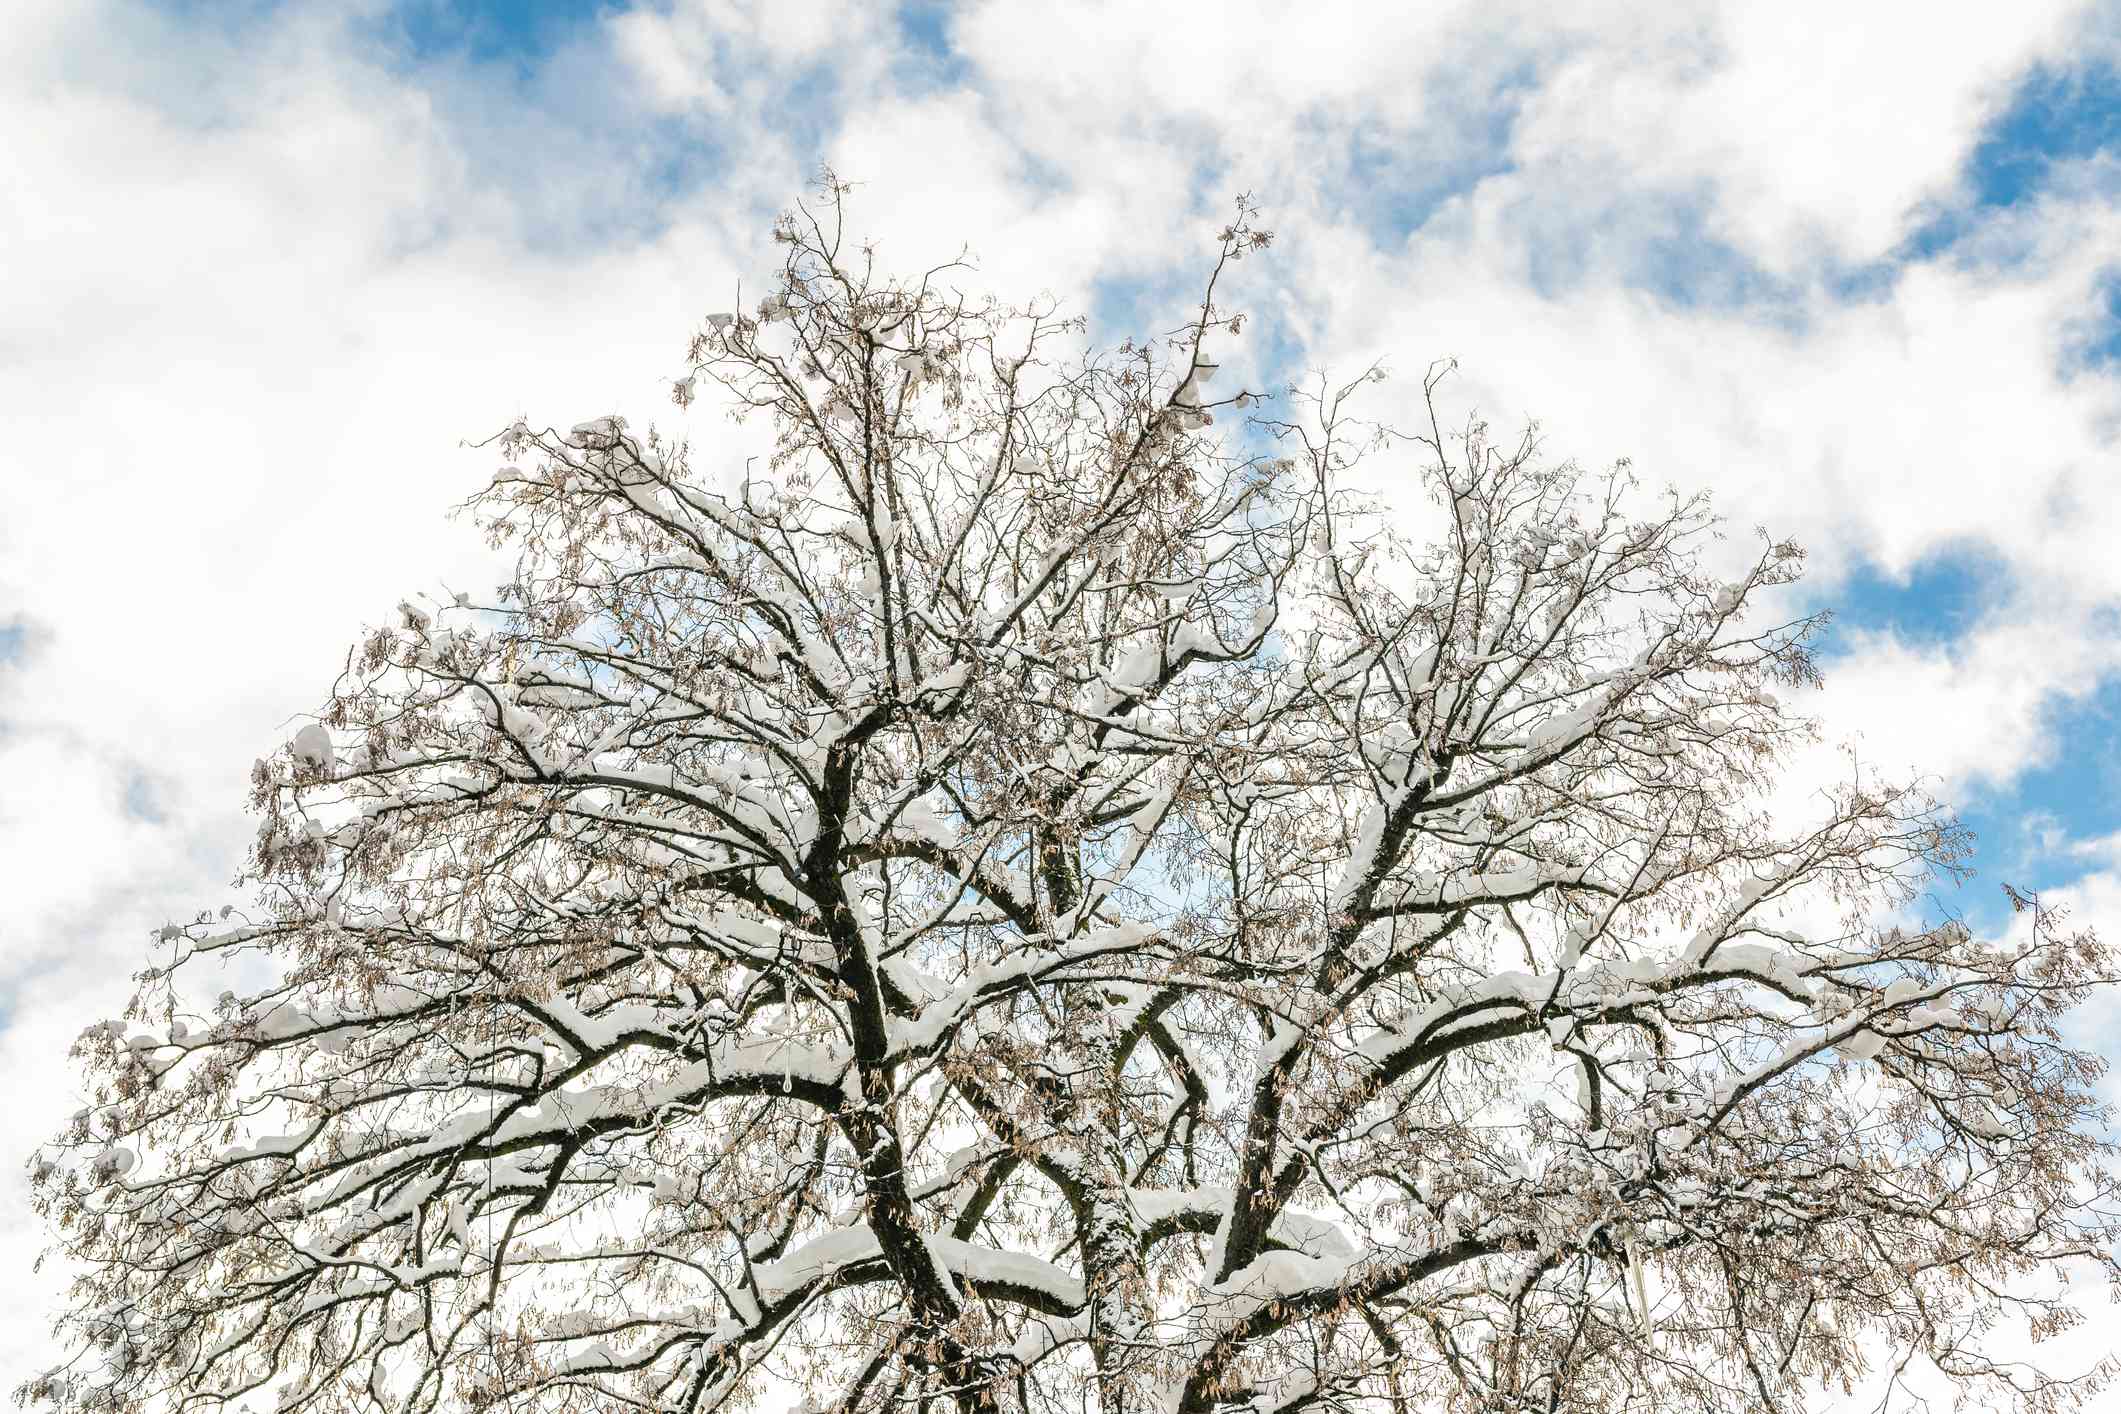 Corona de un árbol cubierto de nieve contra un cielo azul nublado